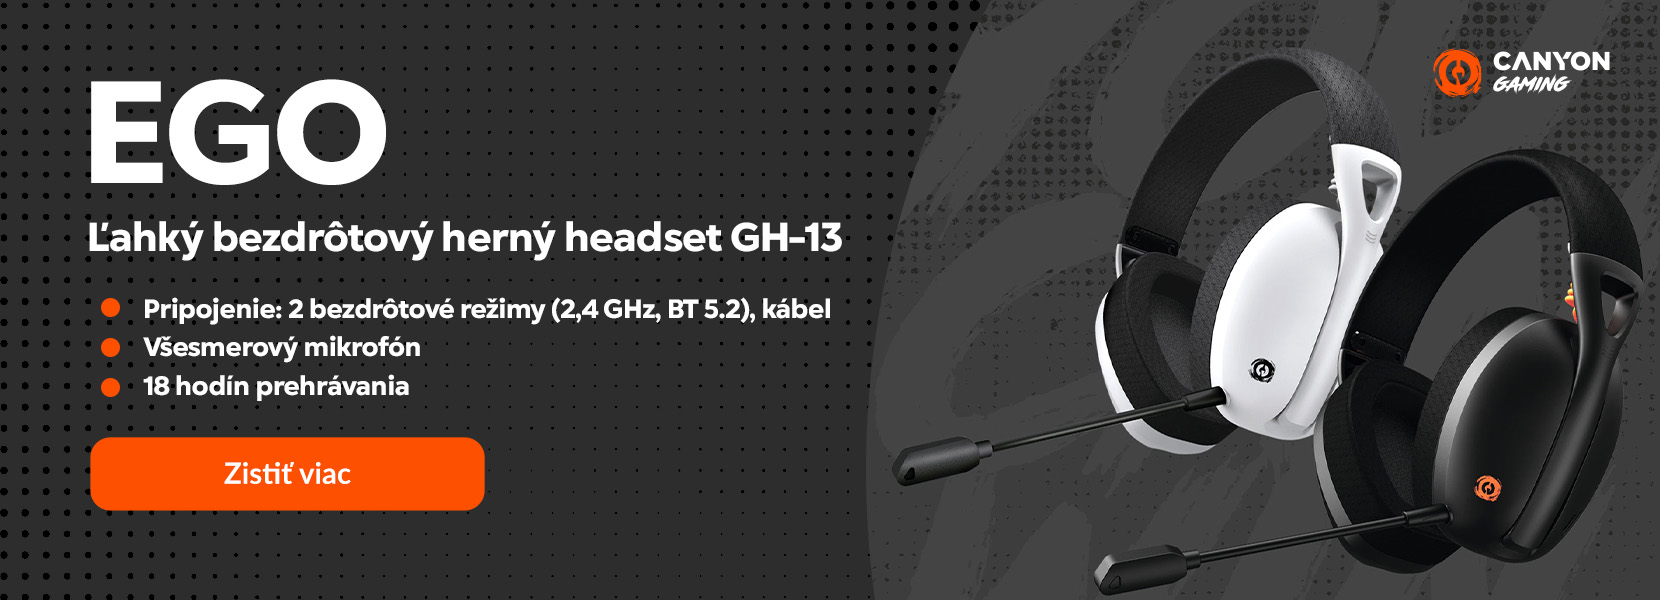 Ľahký bezdrôtový herný headset GH-13